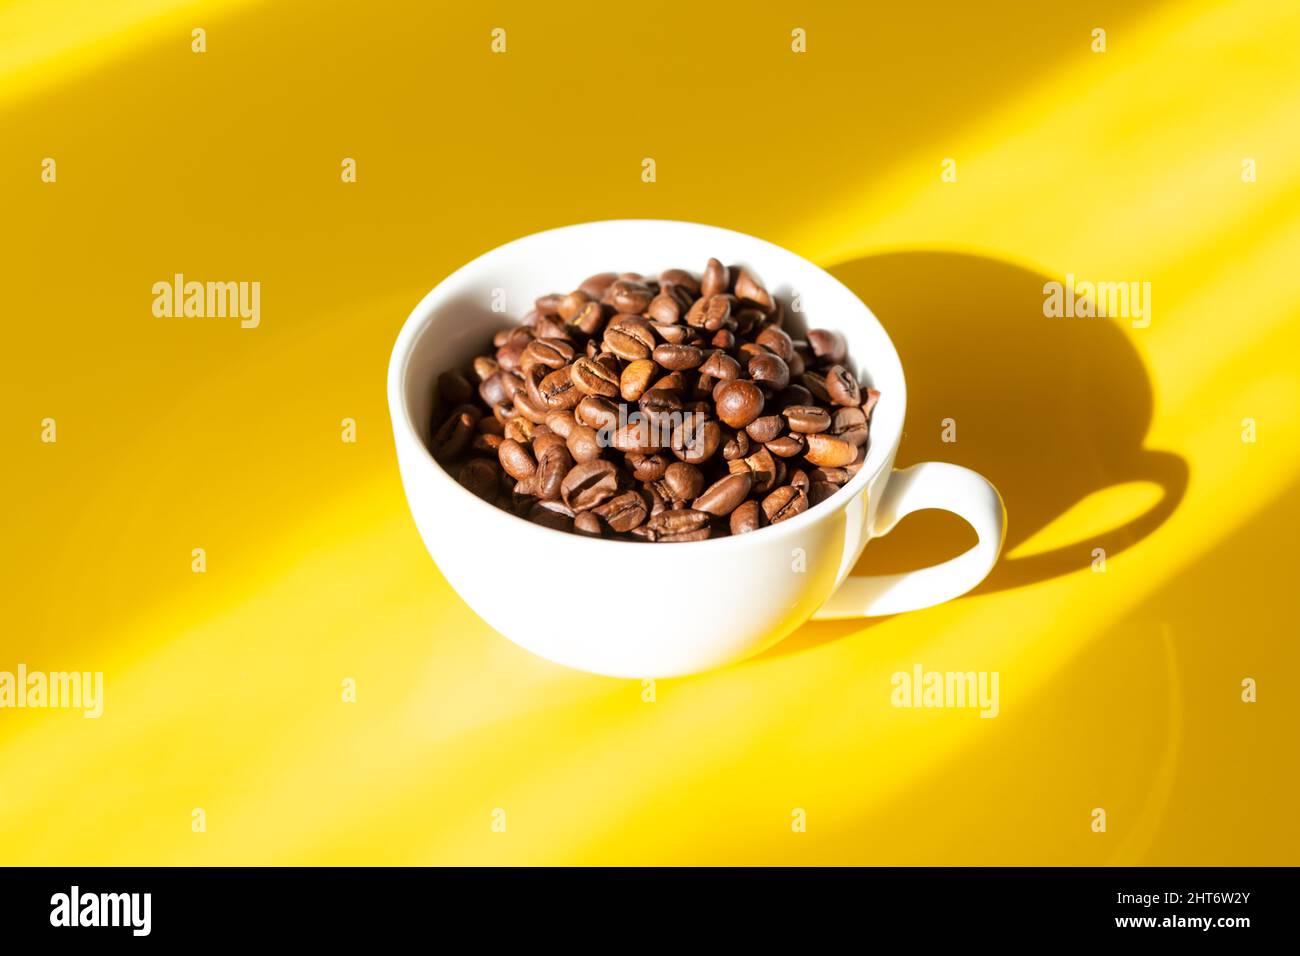 Grains de café dans une tasse en céramique blanche sur fond jaune. Ombres dures du soleil Banque D'Images